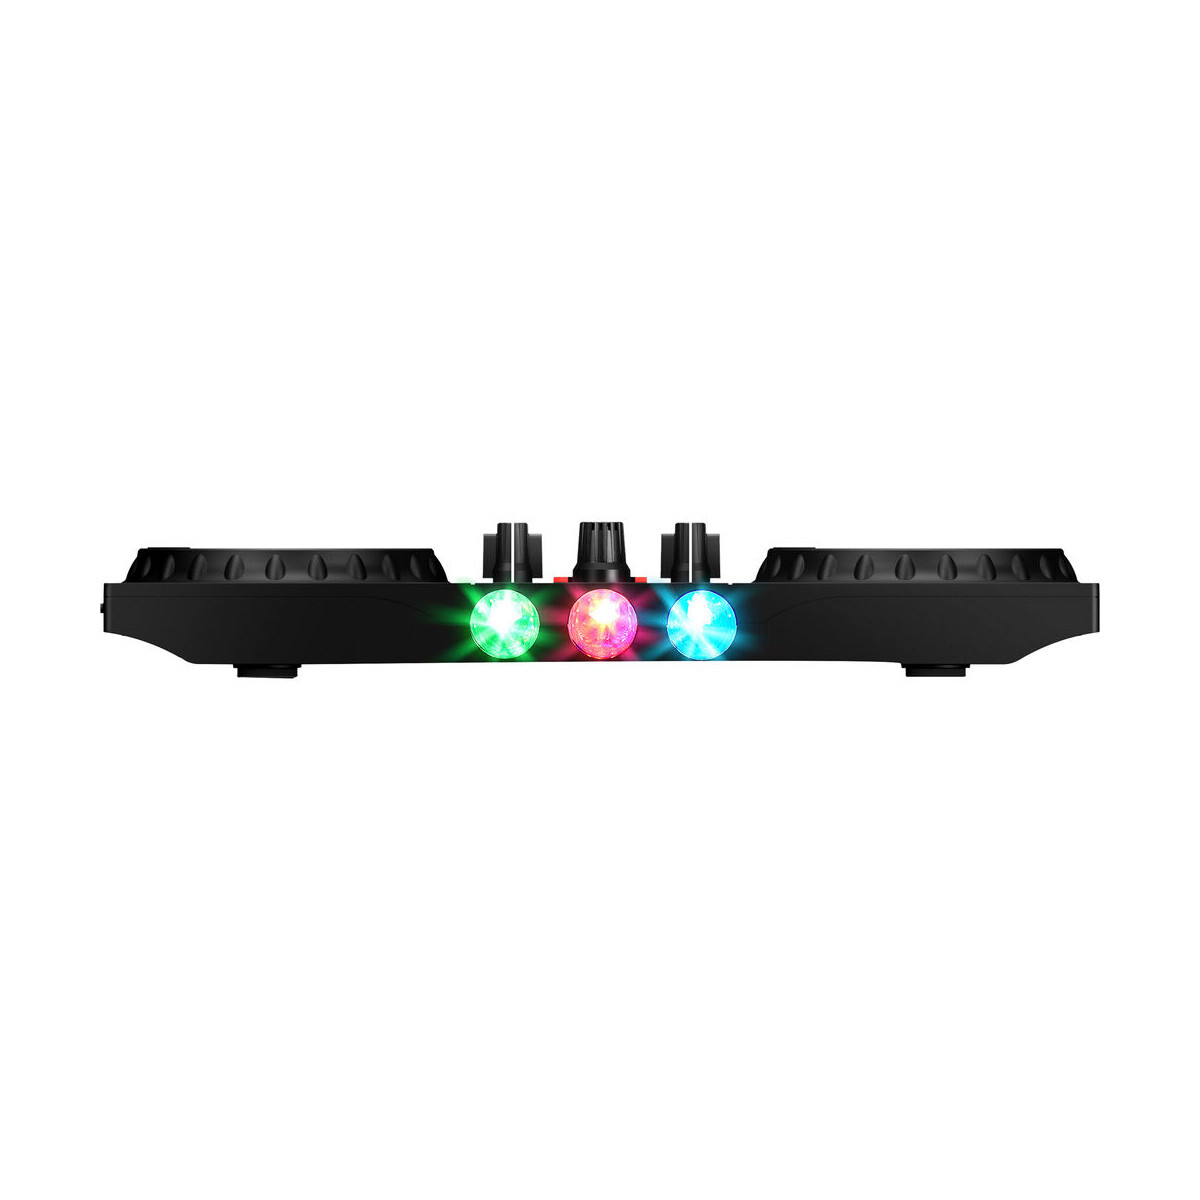 Controlador para dj numark party mix 2 con luces incorporadas Negro